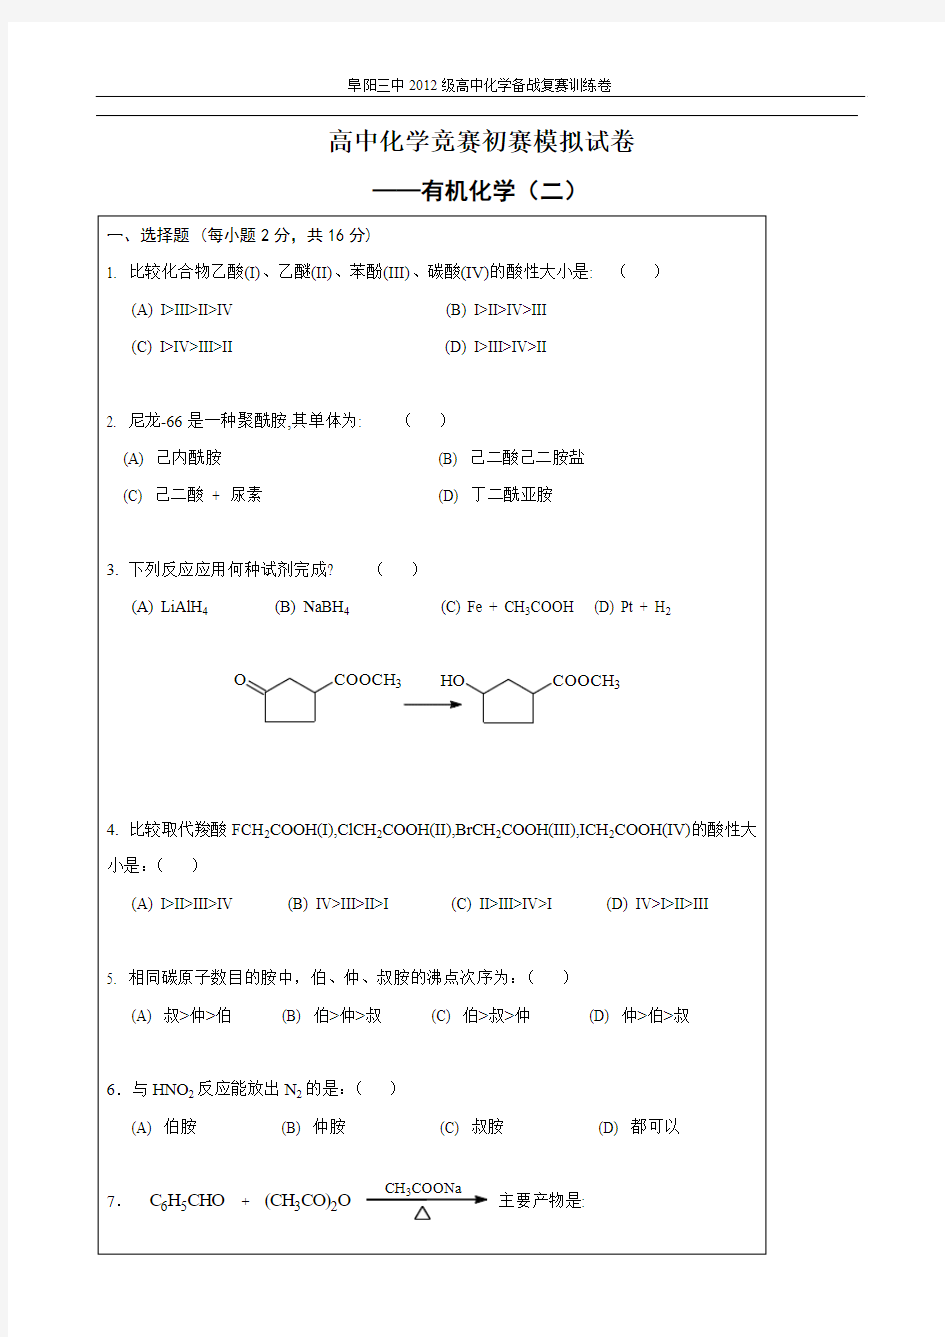 高中化学竞赛初赛模拟试卷3——有机化学(二)